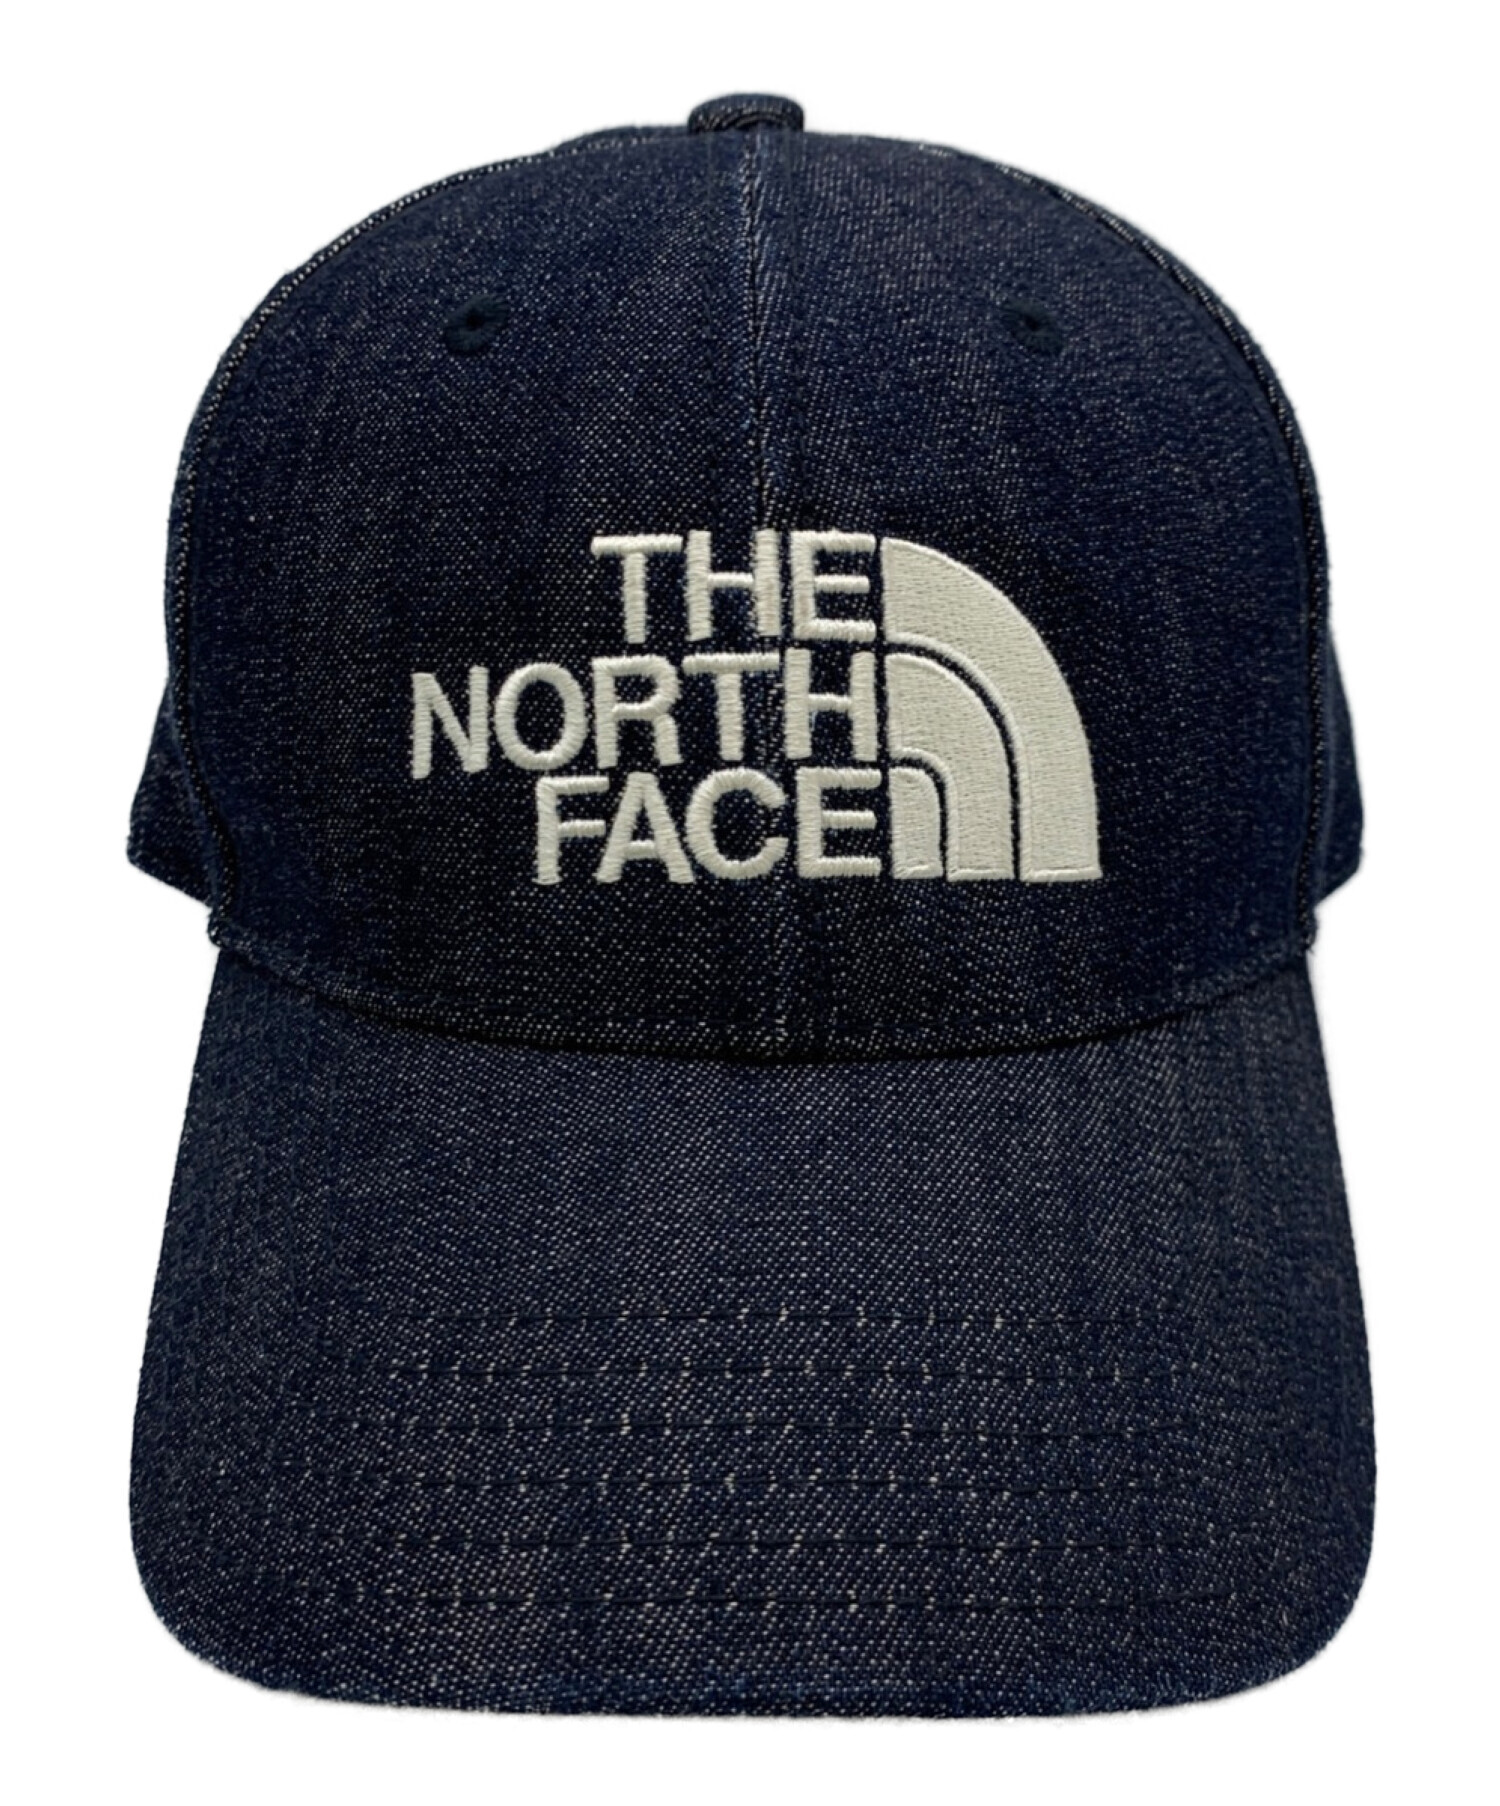 THE NORTH FACE キャップ - インディゴ(デニム)